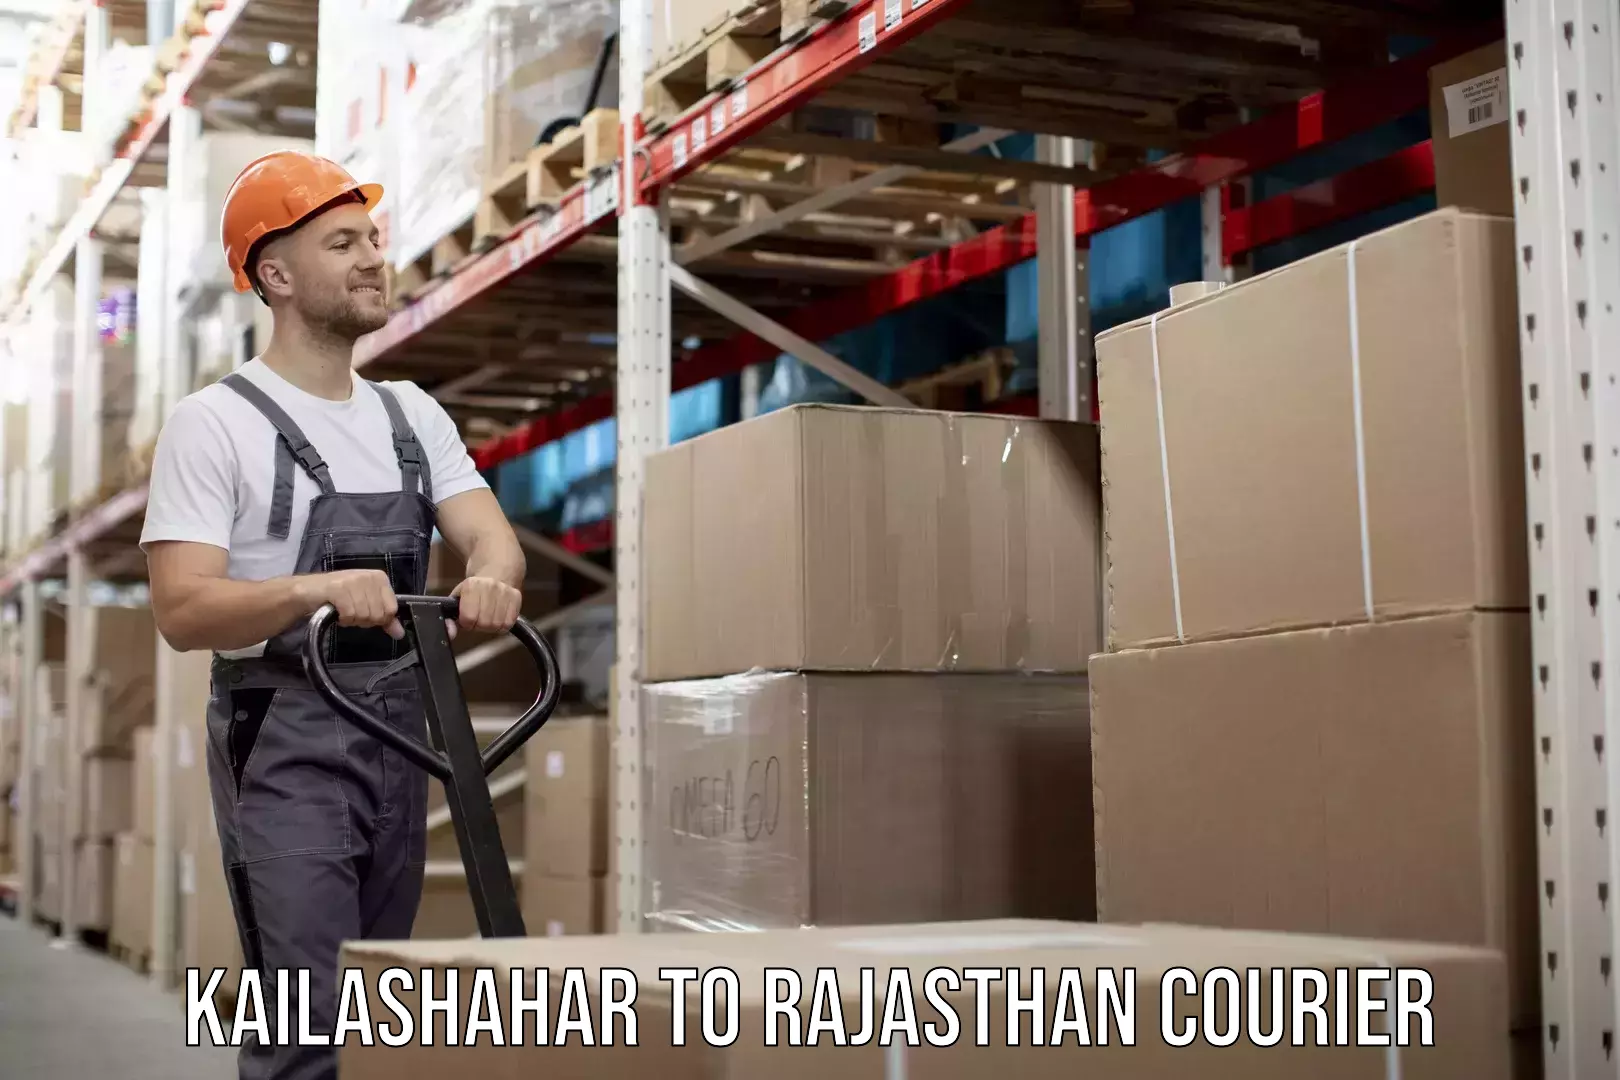 High-performance logistics Kailashahar to Rajasthan